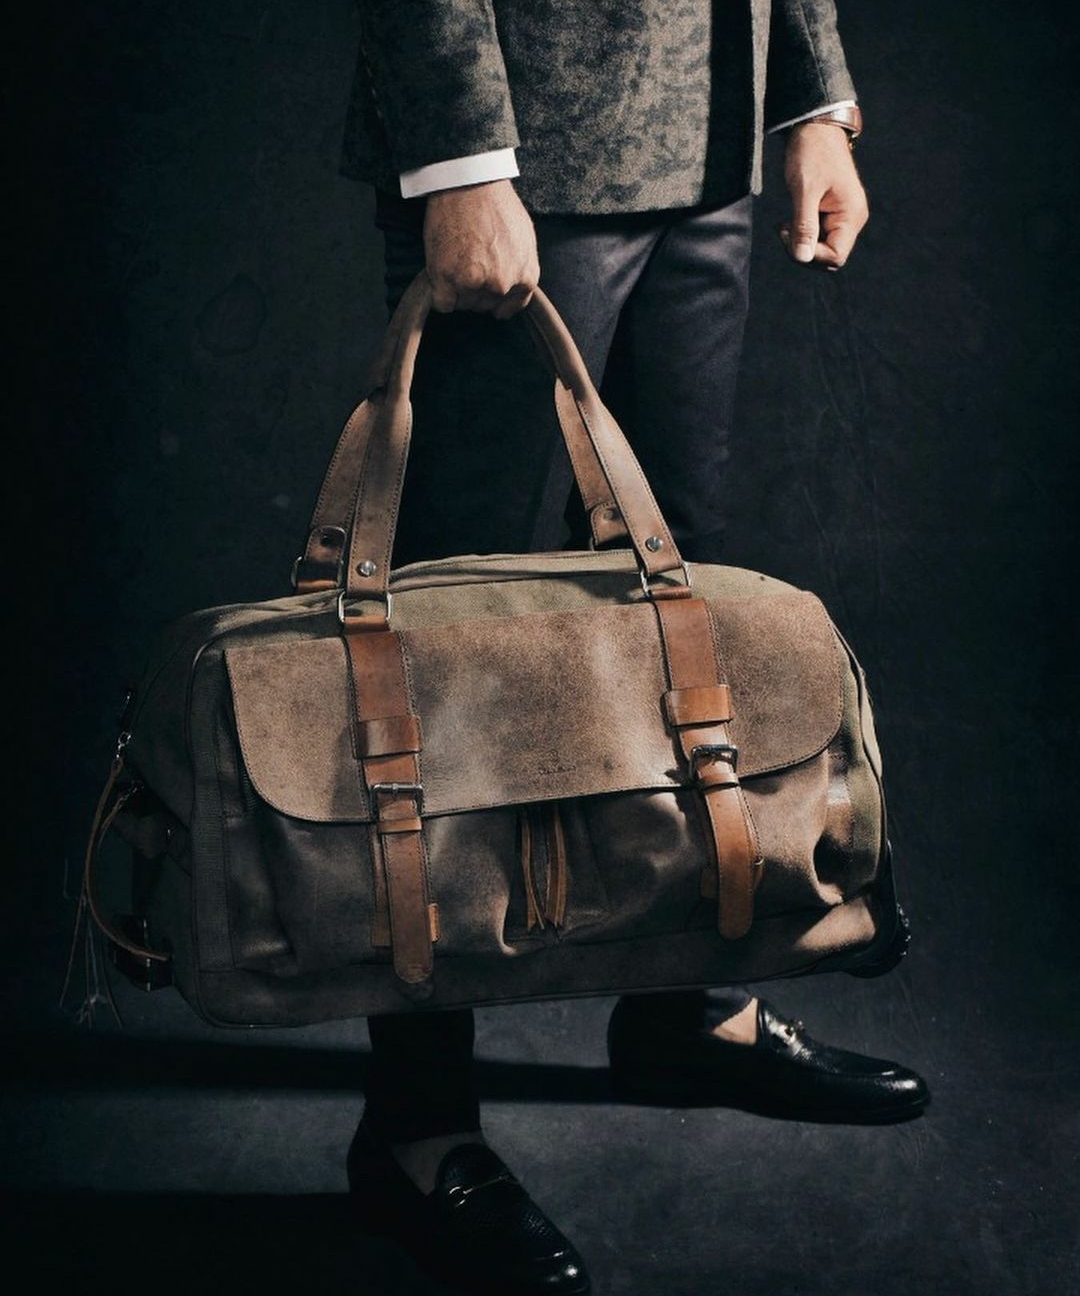 چمدان اسپرت ترکیب چرم و برزنت مدل ونداد